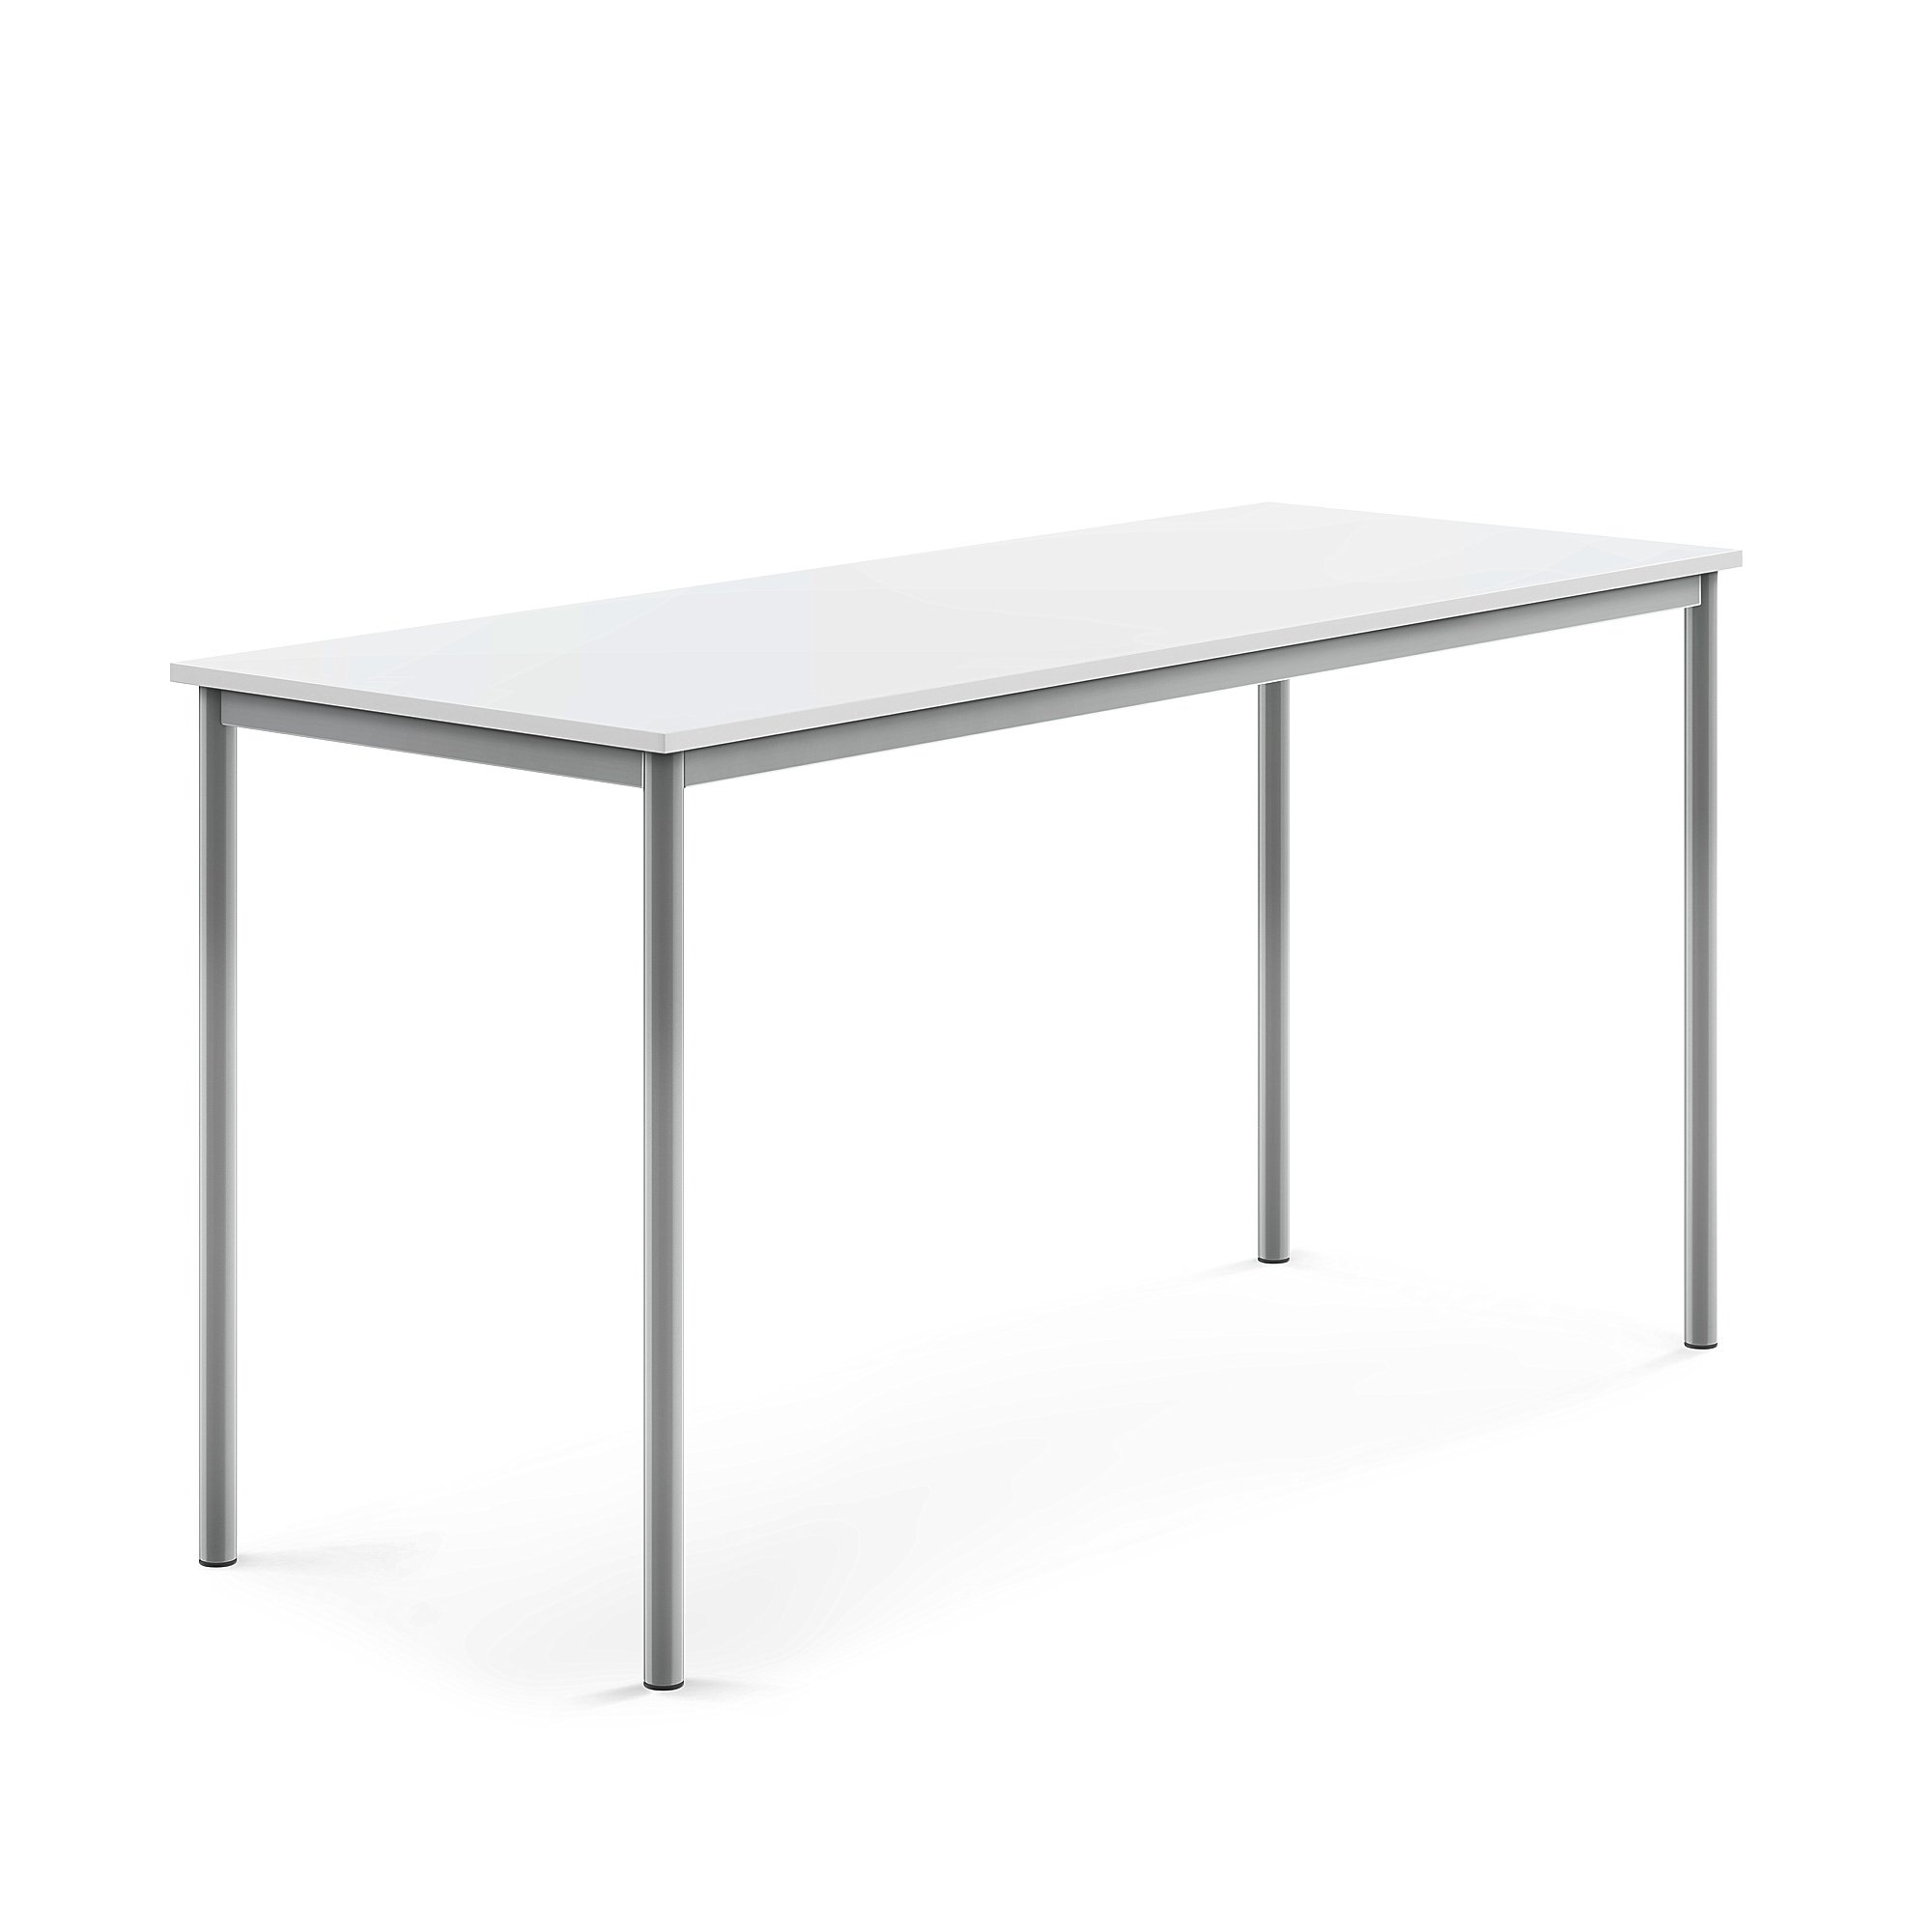 Stůl BORÅS, 1800x700x900 mm, stříbrné nohy, HPL deska, bílá